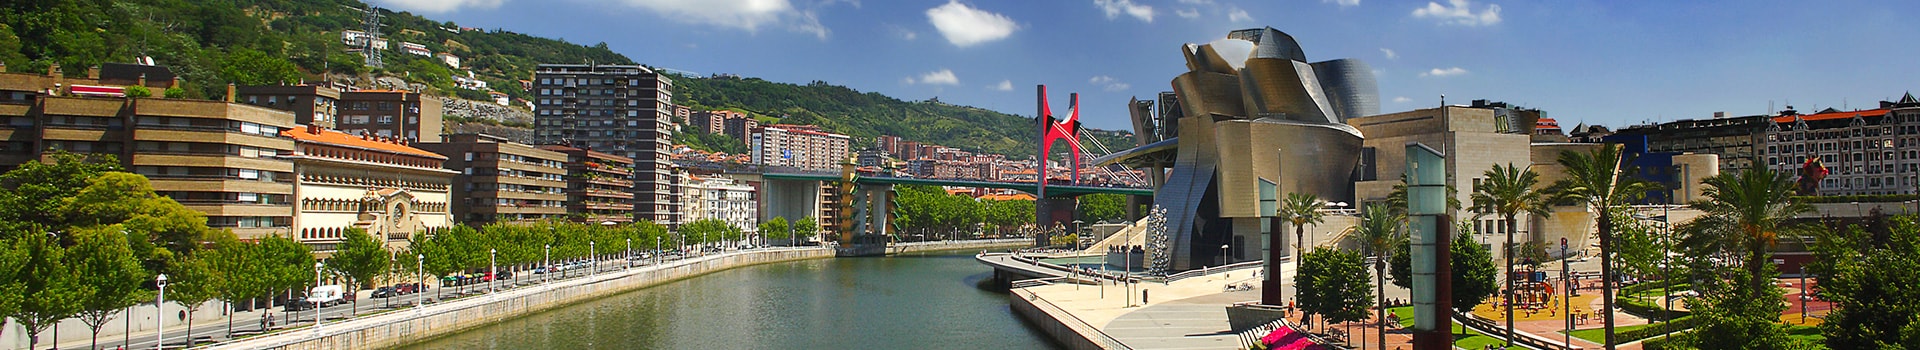 Hambourg - Bilbao